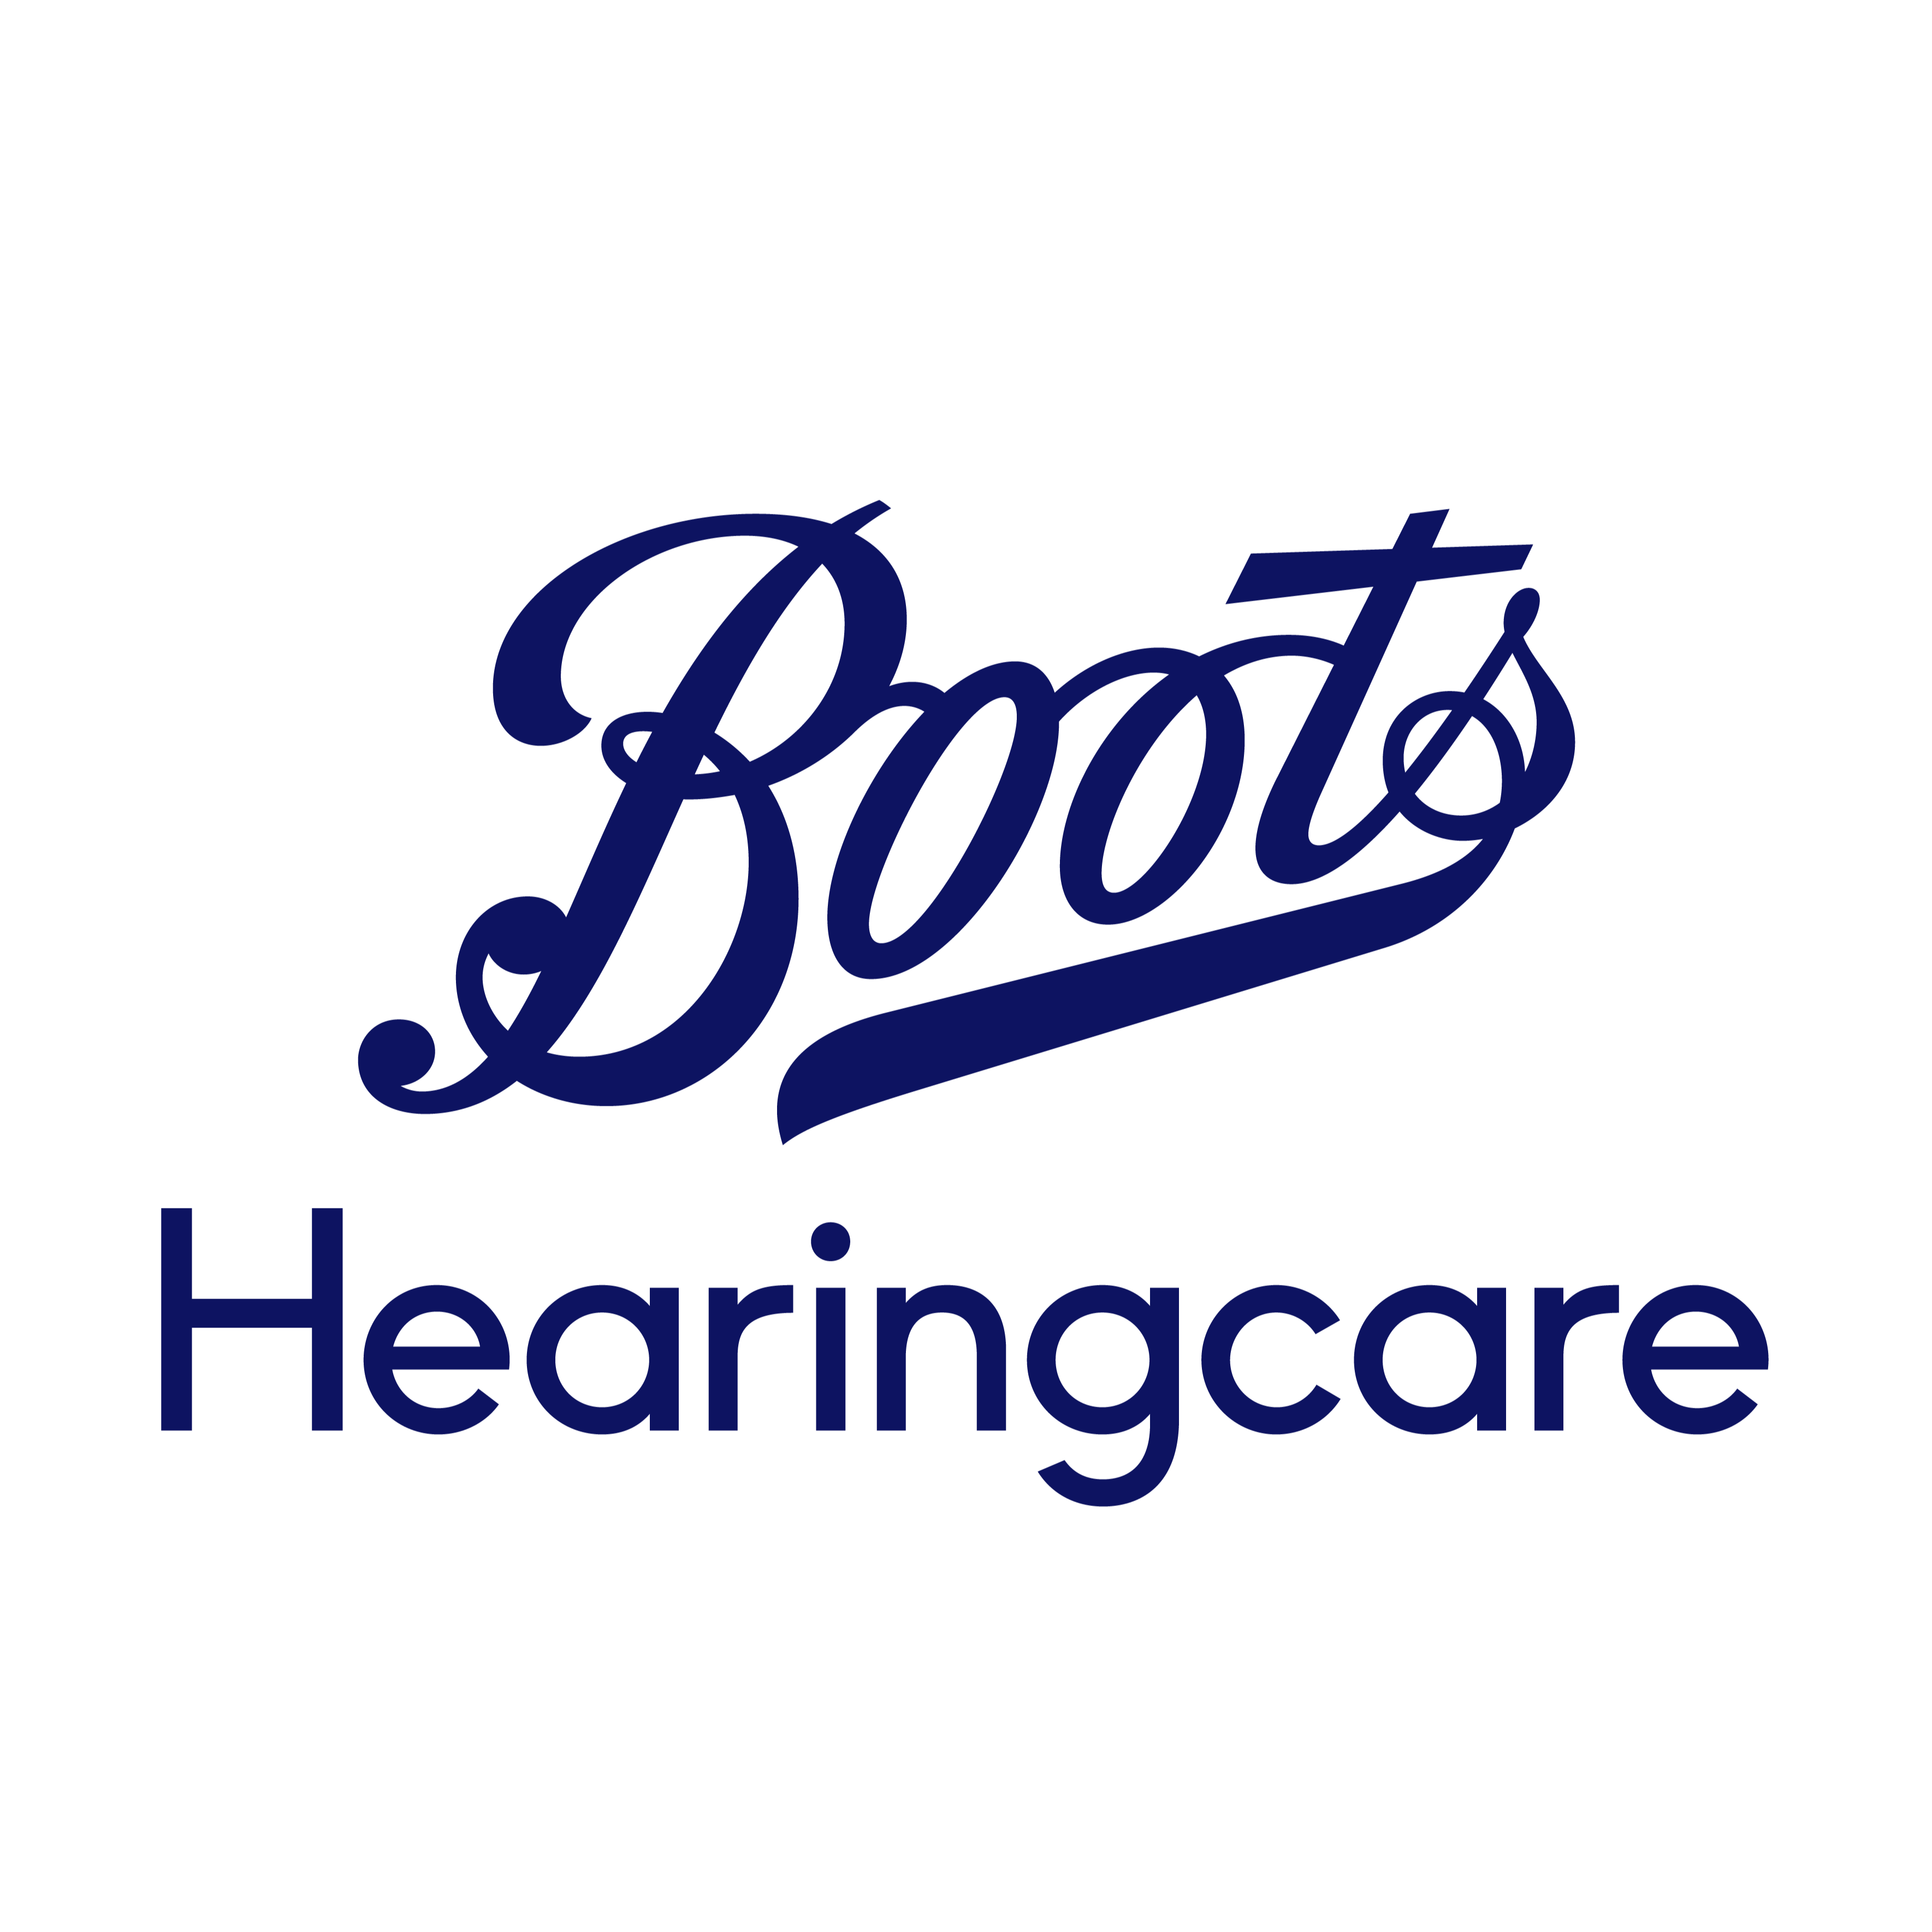 Boots Hearingcare Lancaster St Nicholas Arcades - Lancaster, Lancashire LA1 1NB - 03452 701600 | ShowMeLocal.com